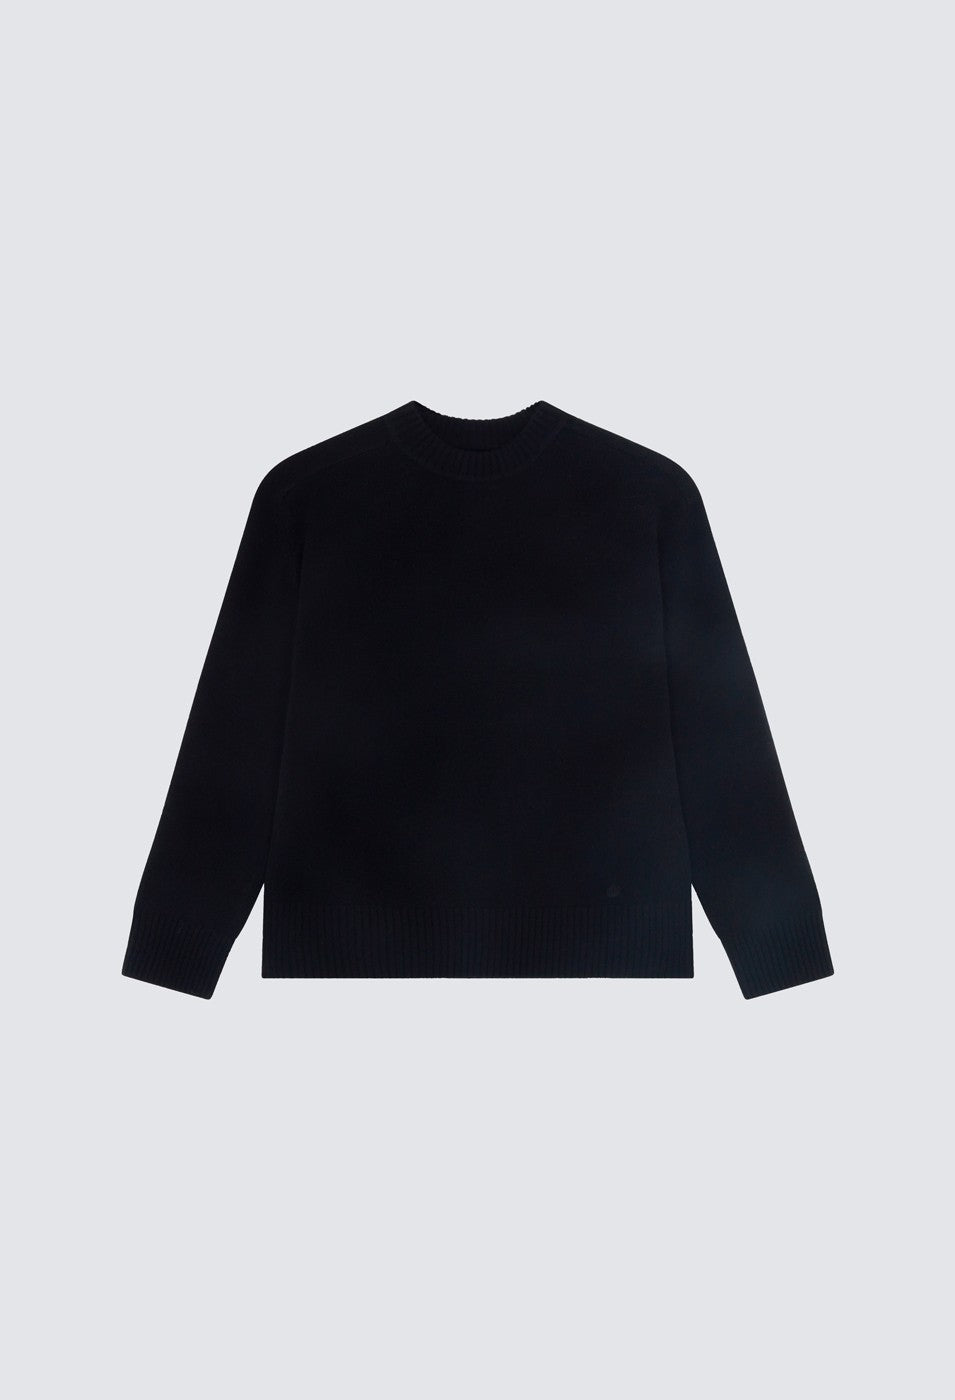 Cotton bolero jumper Color black - SINSAY - WI711-99X